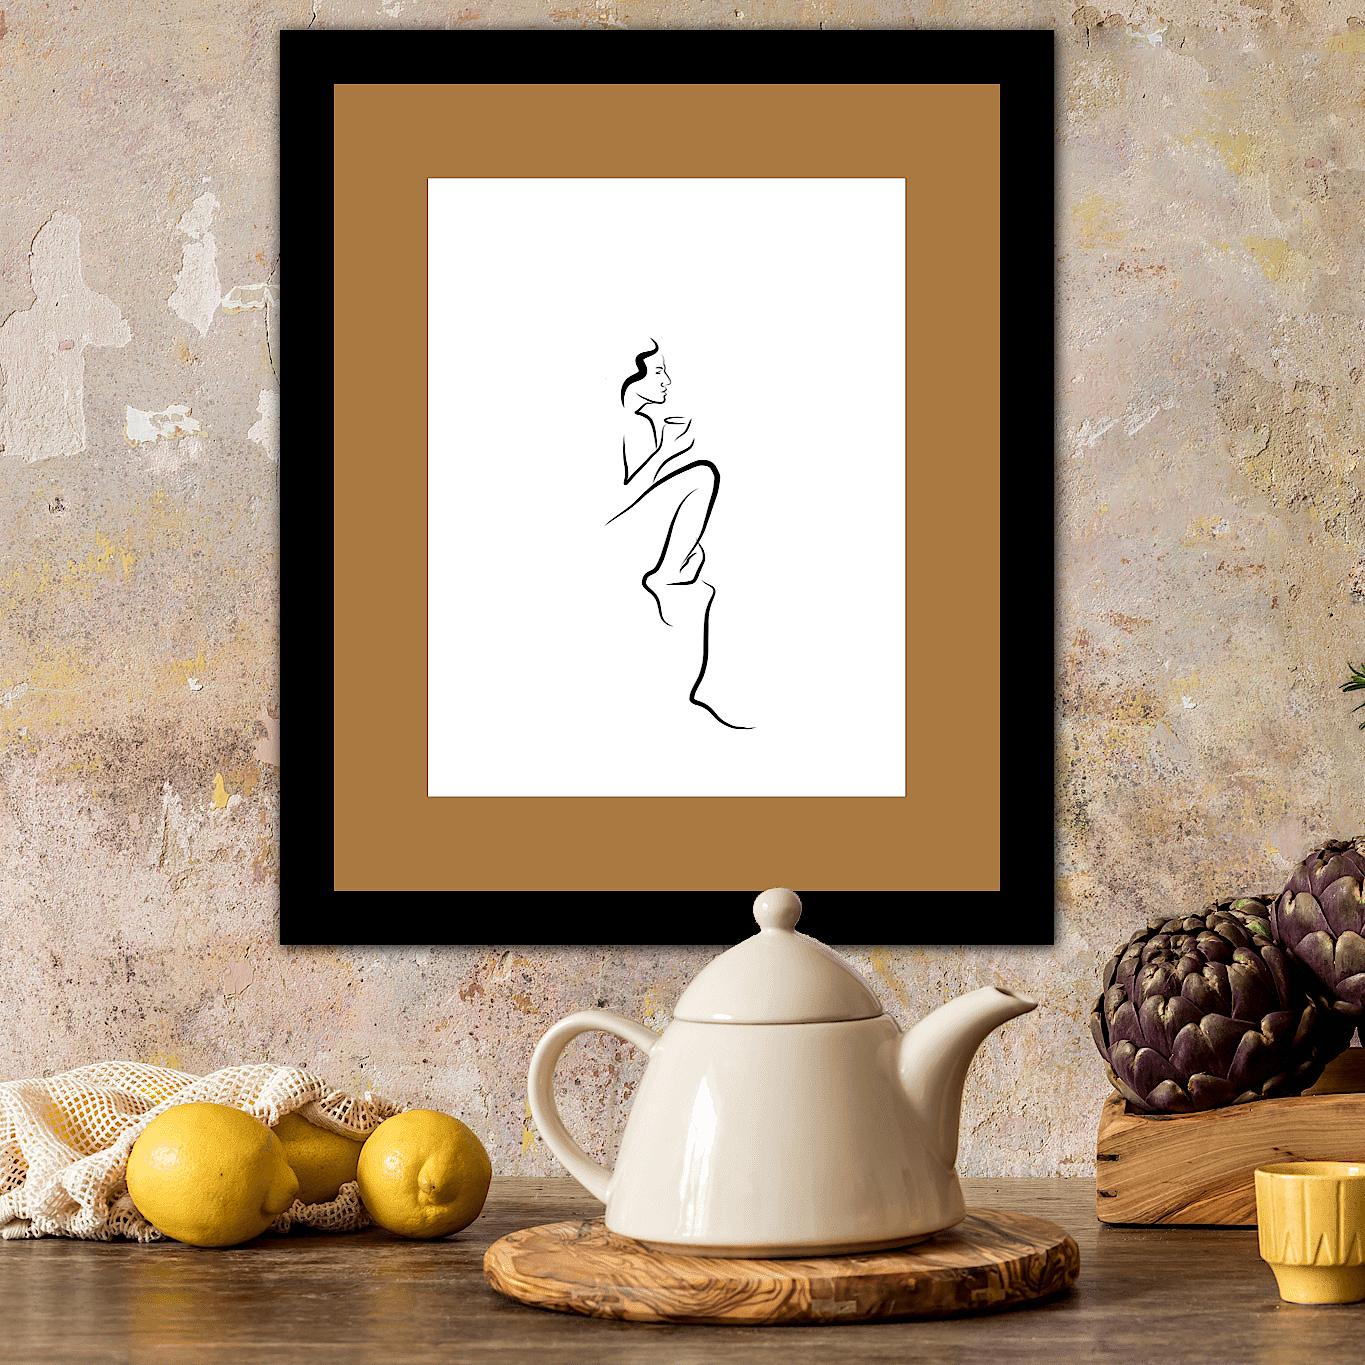 Haiku #51, 1/50 - Digital Vector Drawing Seated Female Nude Figure Sip Coffee - Contemporary Print by Michael Binkley